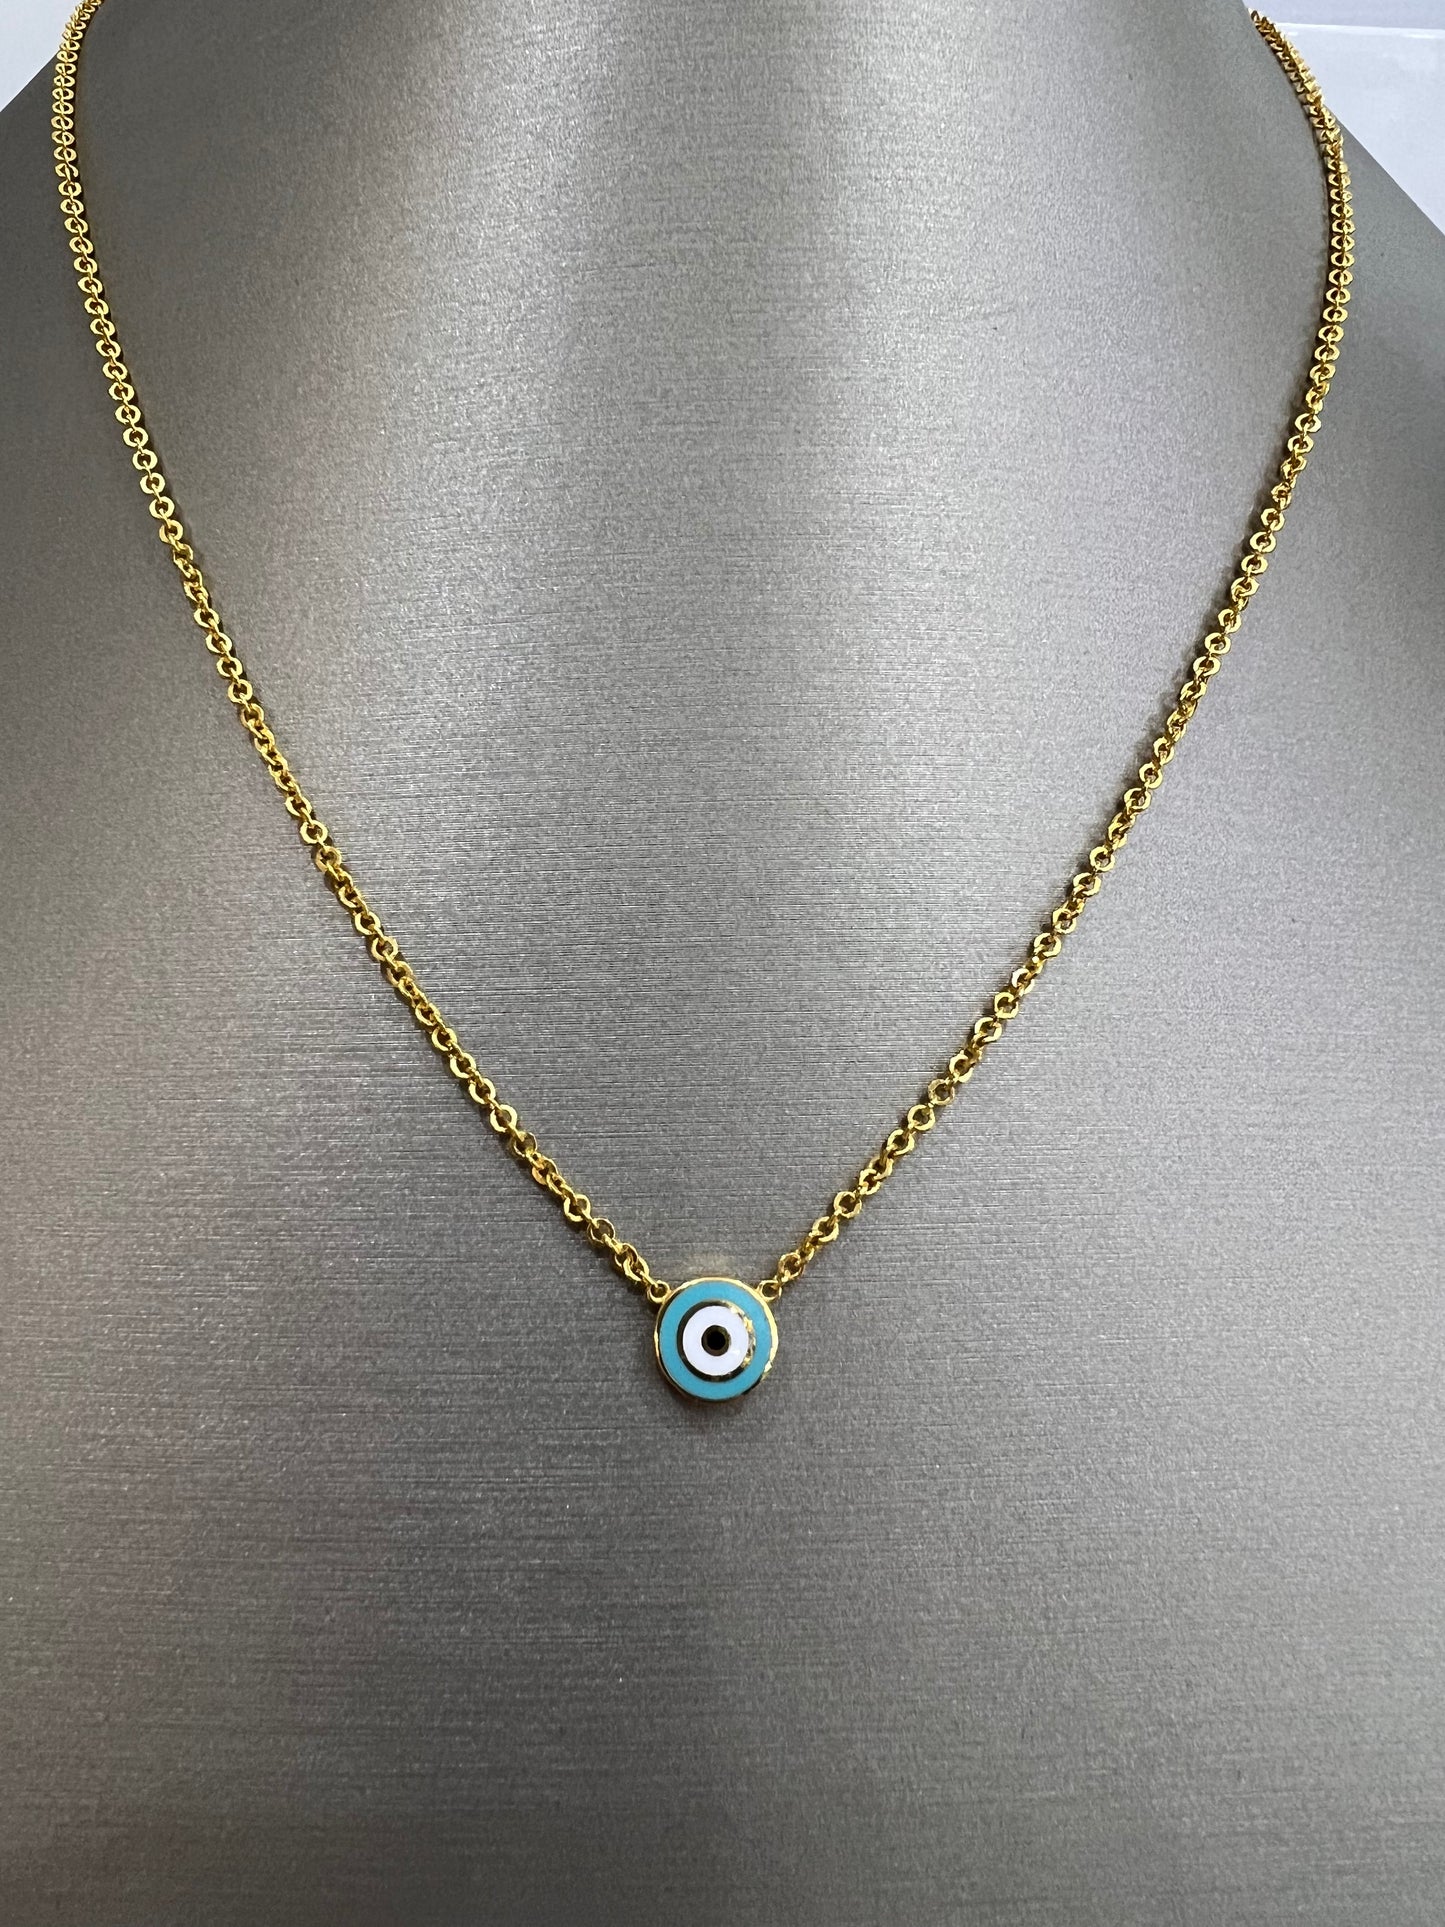 21k Gold Evil Eye Necklace